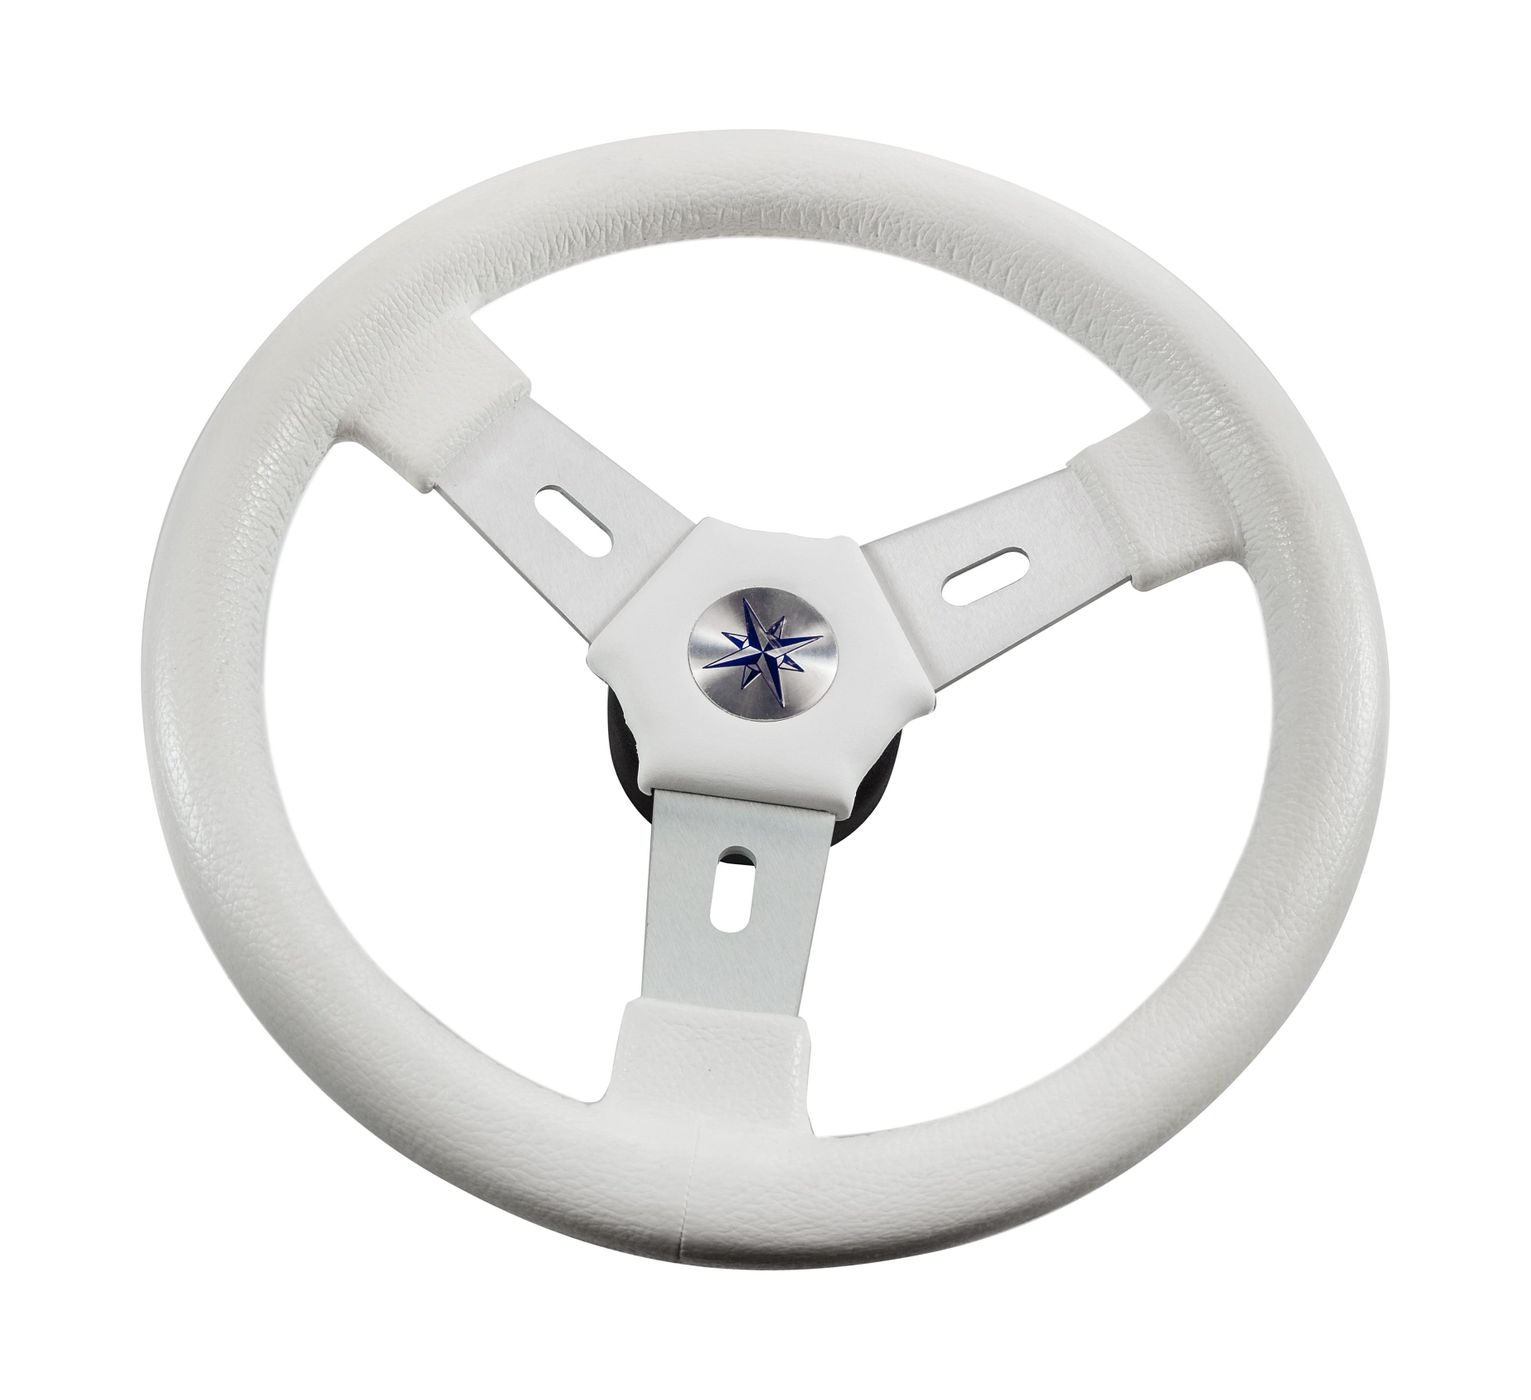 Рулевое колесо ELBA обод белый, спицы серебрянные д.320 мм VN70311-08 рулевое колесо leader plast белый обод серебряные спицы д 330 мм vn8330 08